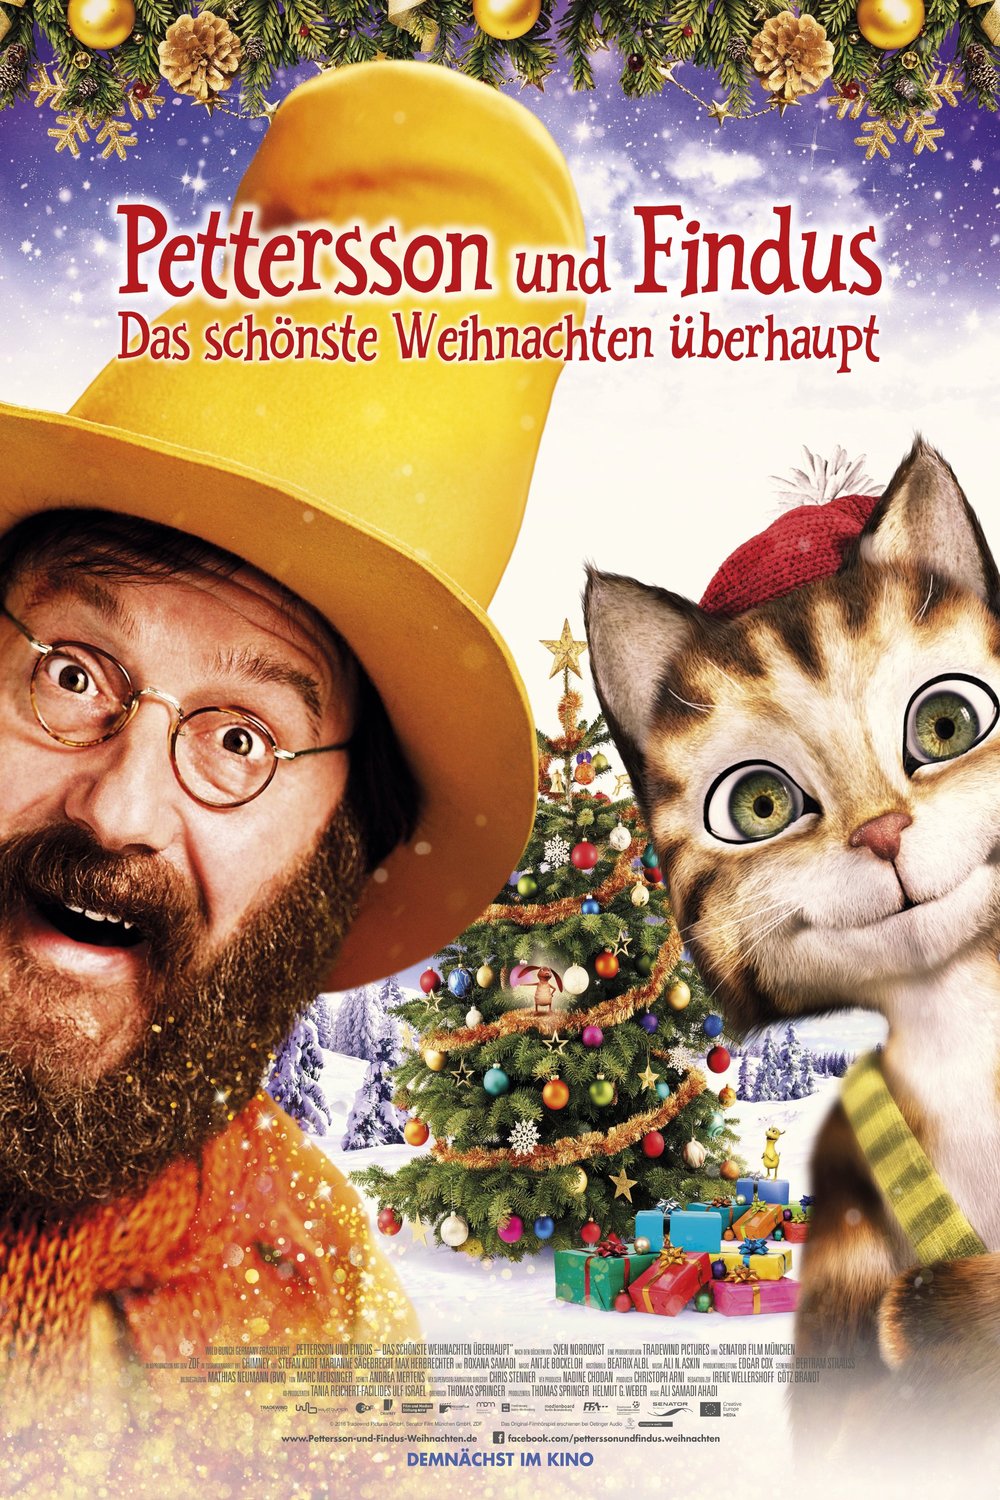 L'affiche originale du film Pettersson und Findus 2 - Das schonste Weihnachten uberhaupt en allemand